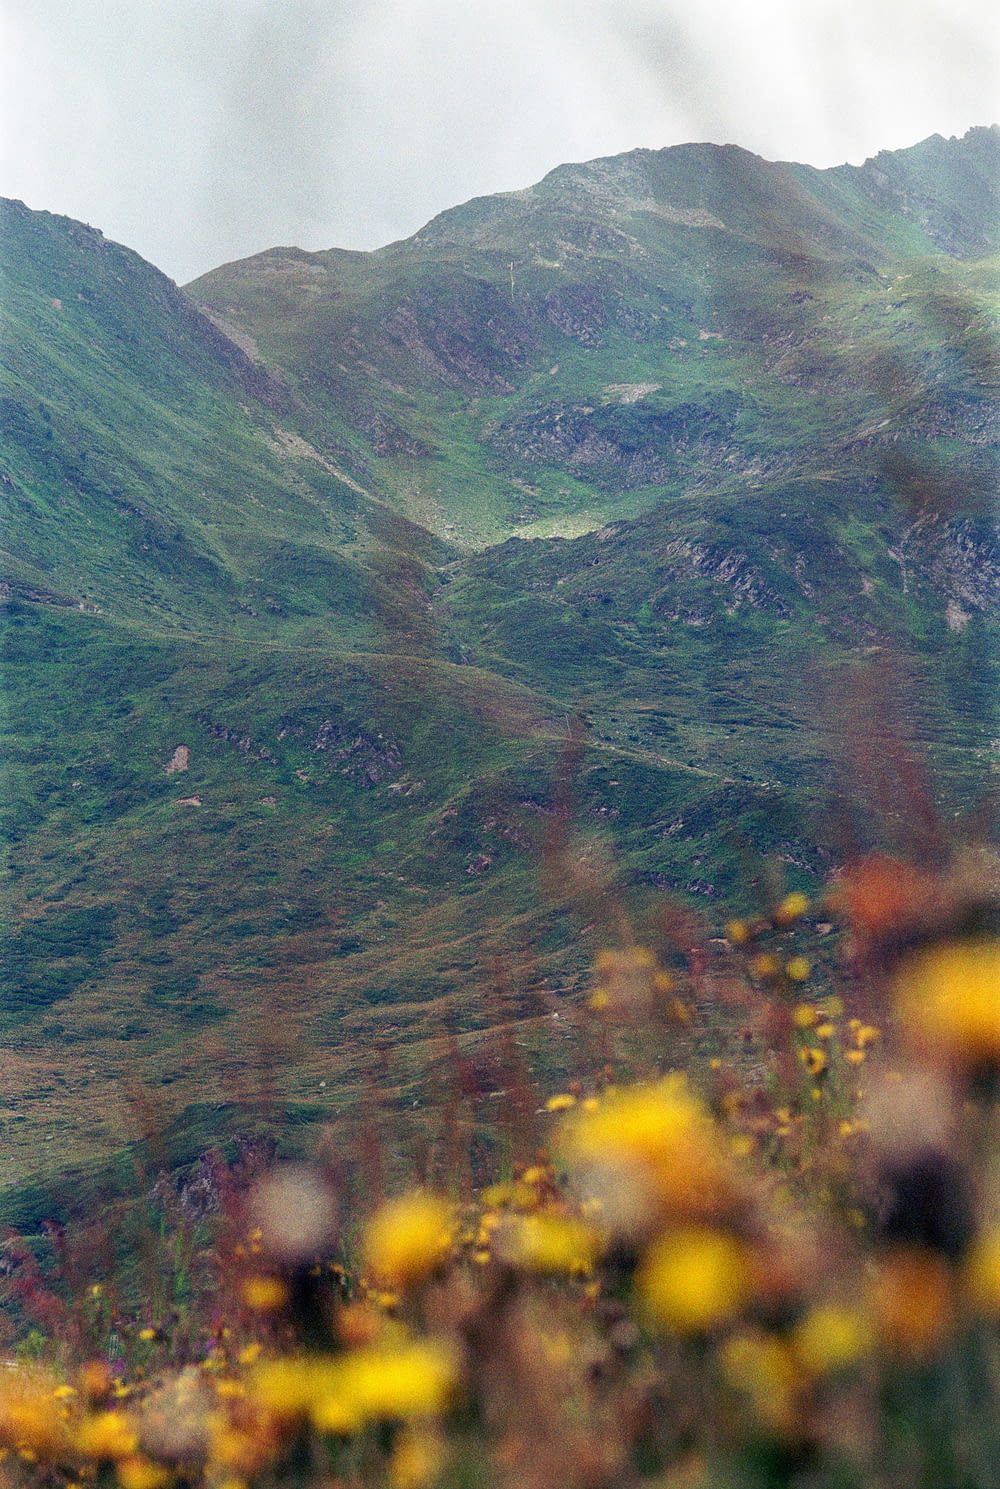 Blick auf einen Berg mit gelben Blumen im Vordergrund